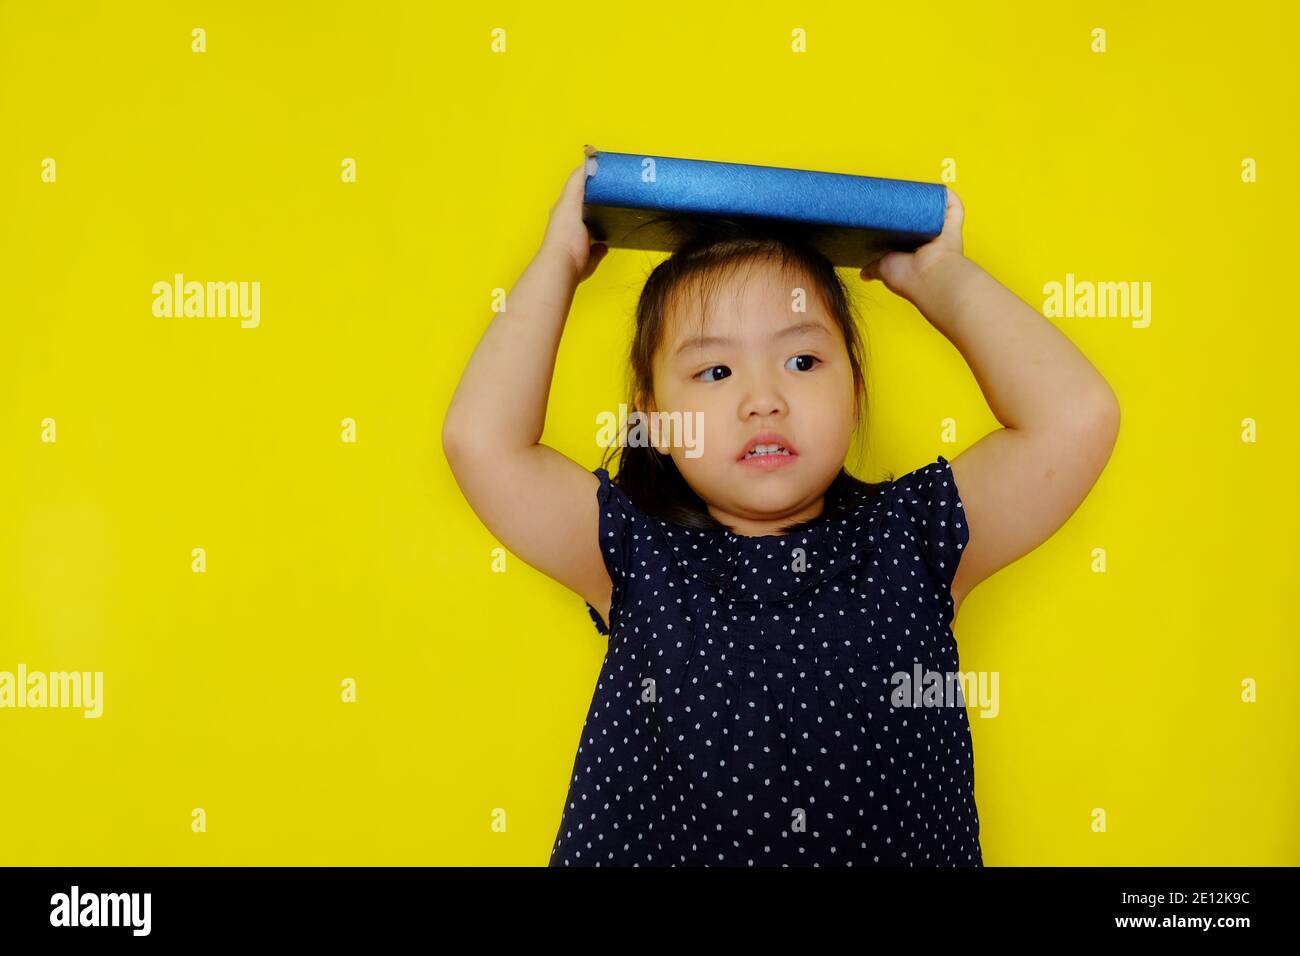 Une jeune fille asiatique mignonne essayant d'équilibrer un grand livre de texte bleu sur sa tête comme une punition de son professeur. Arrière-plan jaune vif. Banque D'Images